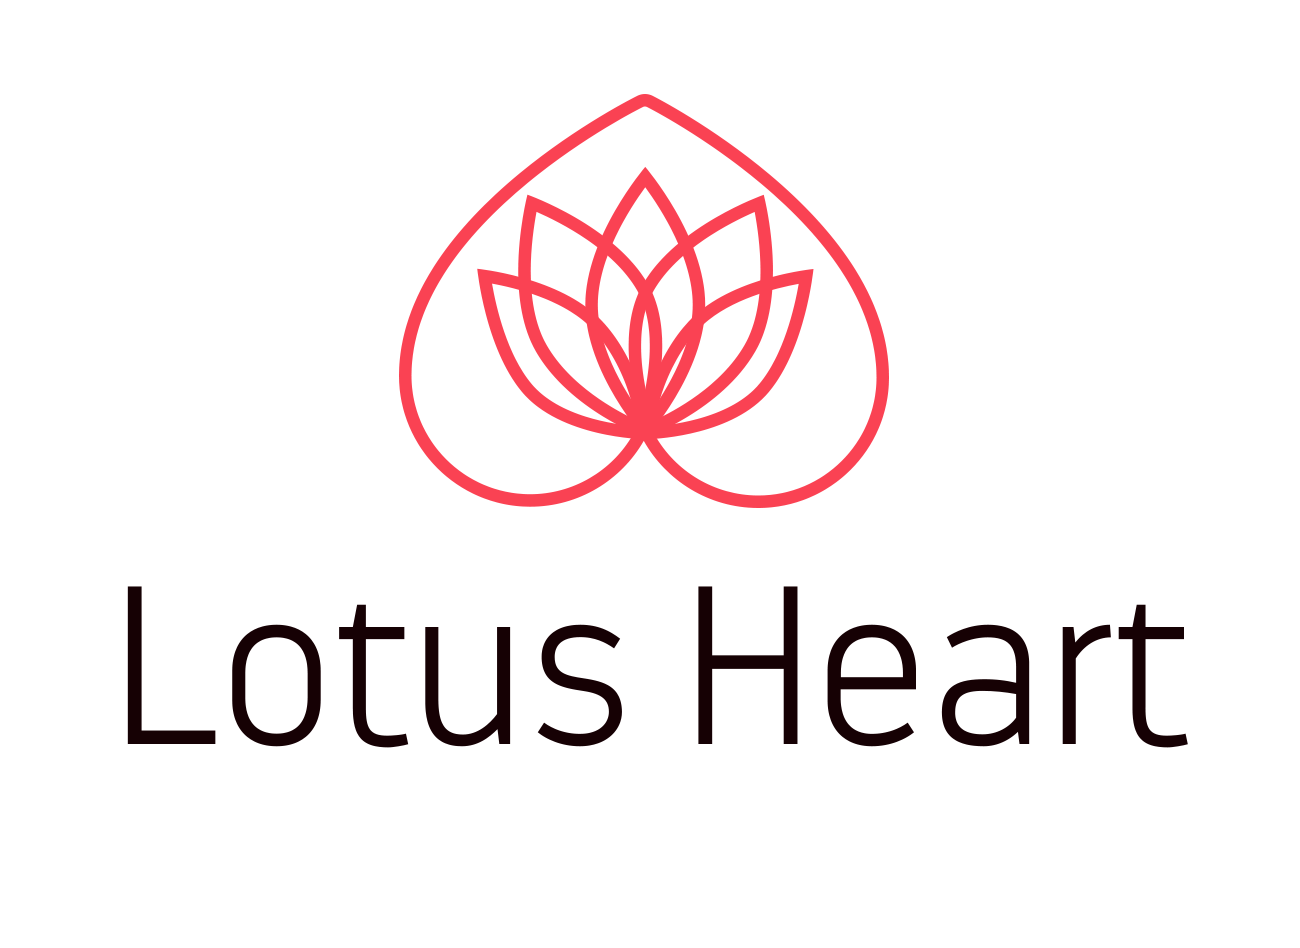 Lotus Heart logo